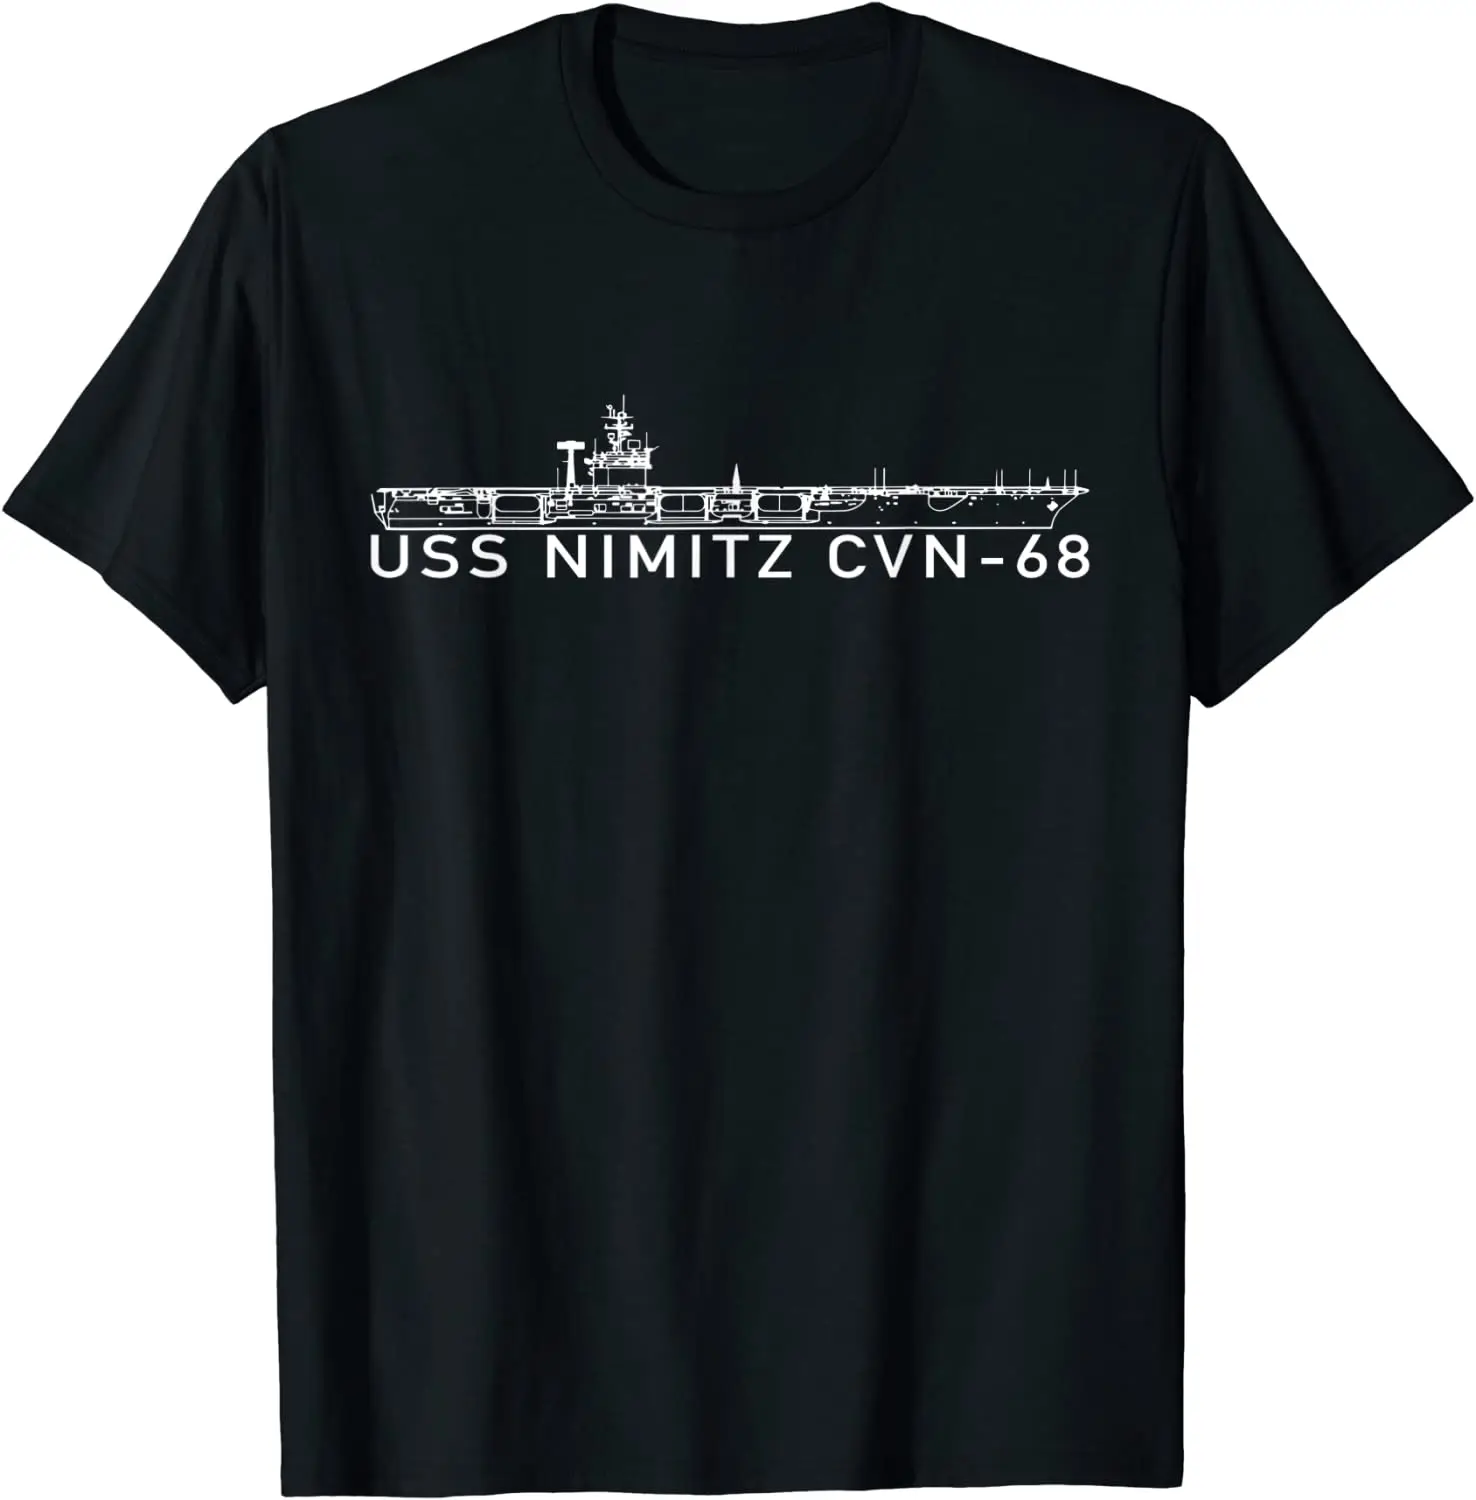 

Naval (CVN-68) Supercarrier S Nimitz Aircraft Carrier T Shirt. New 100% Cotton Short Sleeve O-Neck T-shirt Casual Mens Top